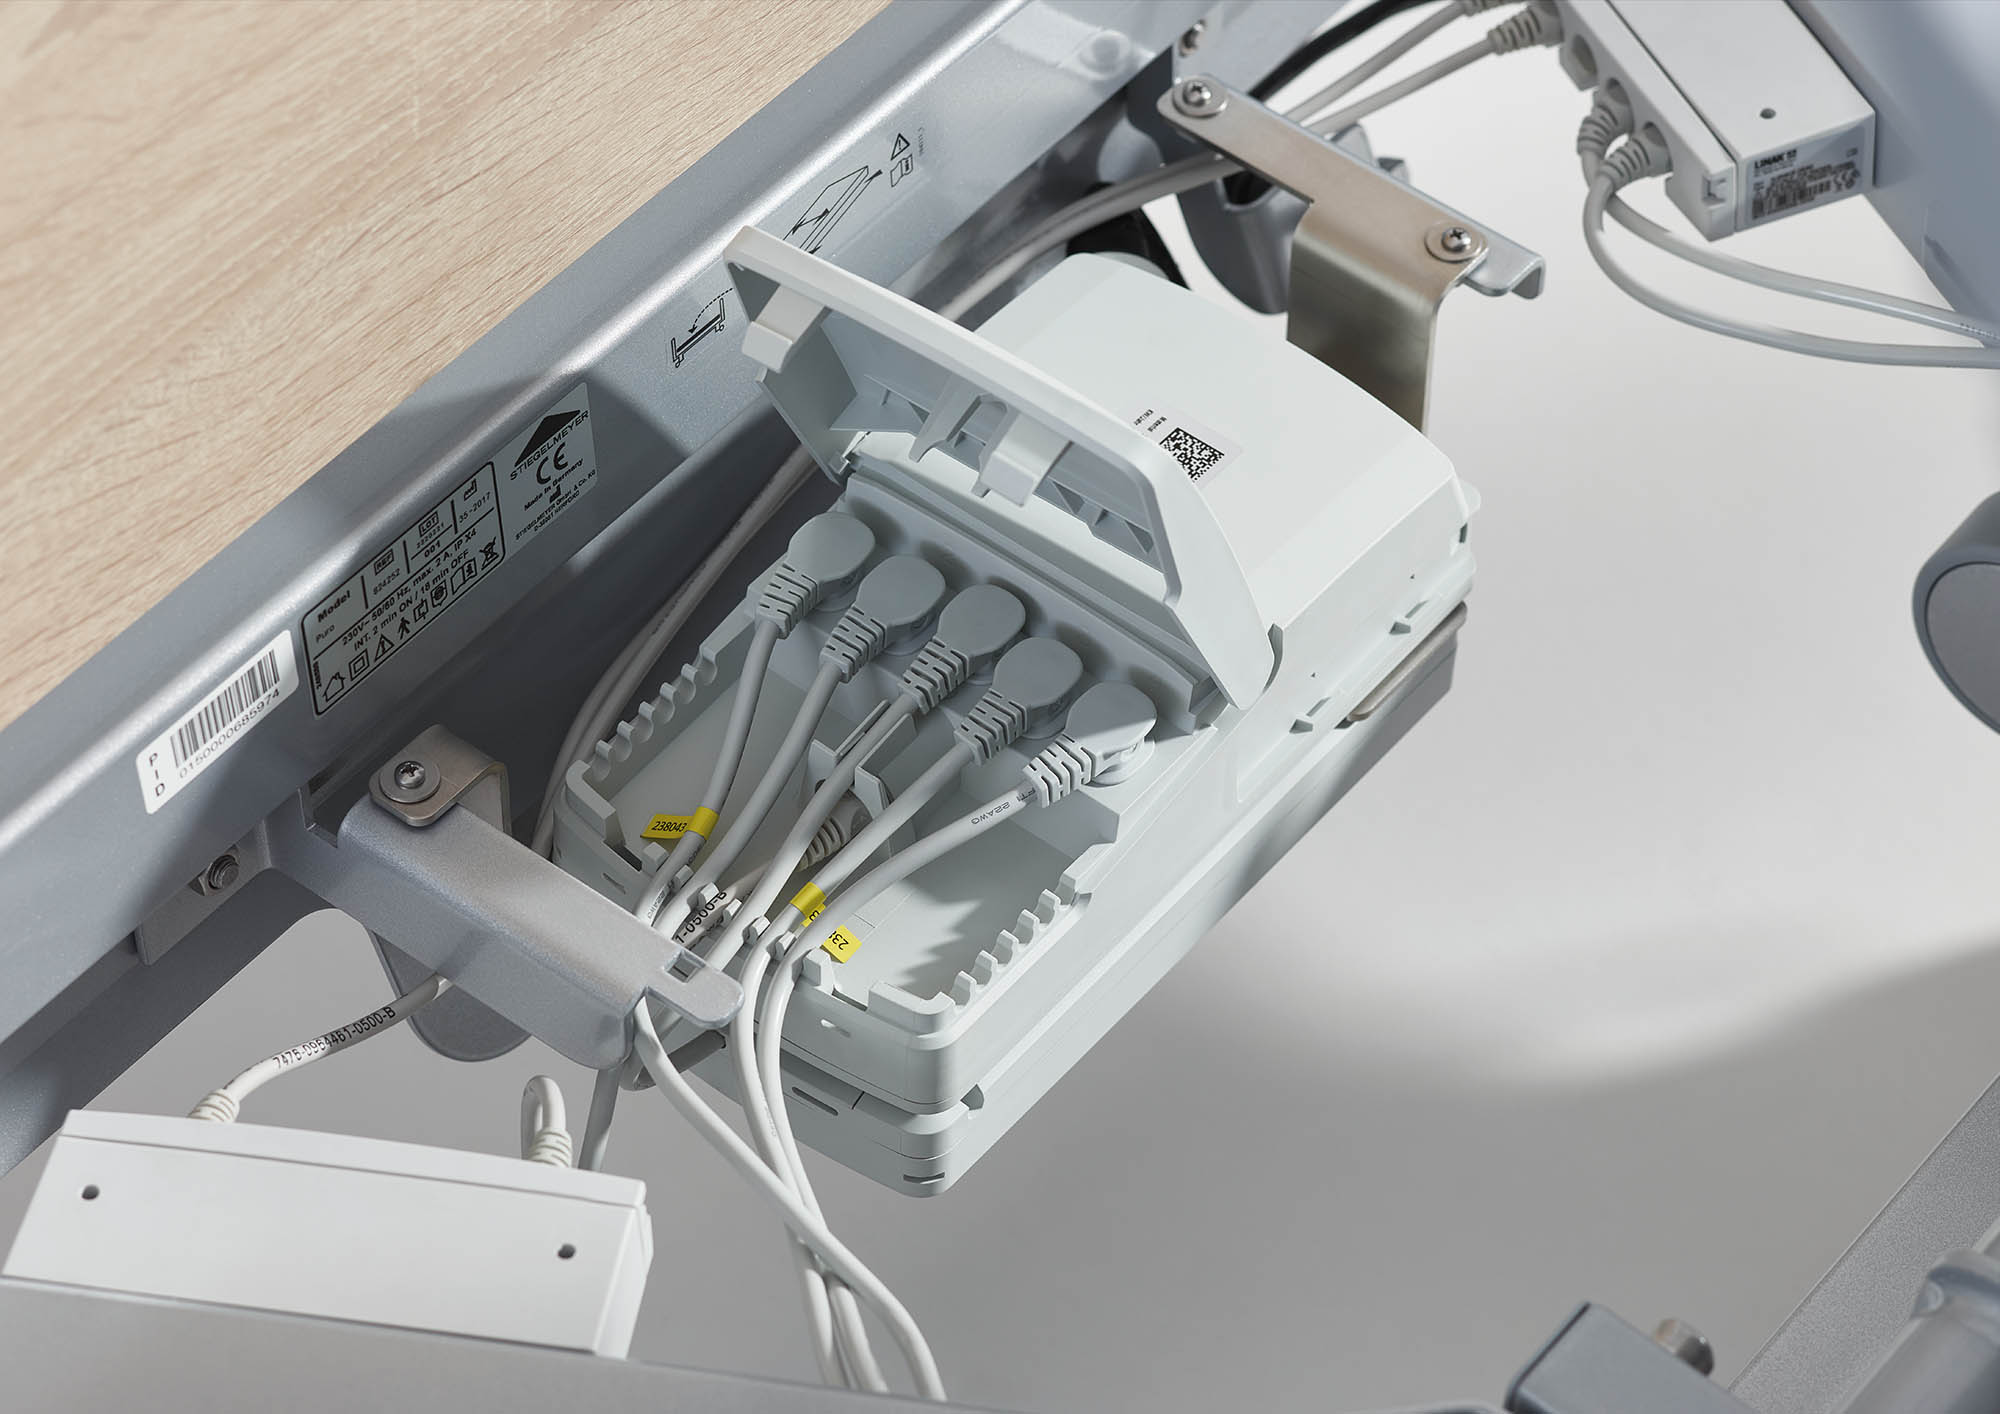 Le circuit électronique du Puro est facile d’accès pour la maintenance et l’inspection